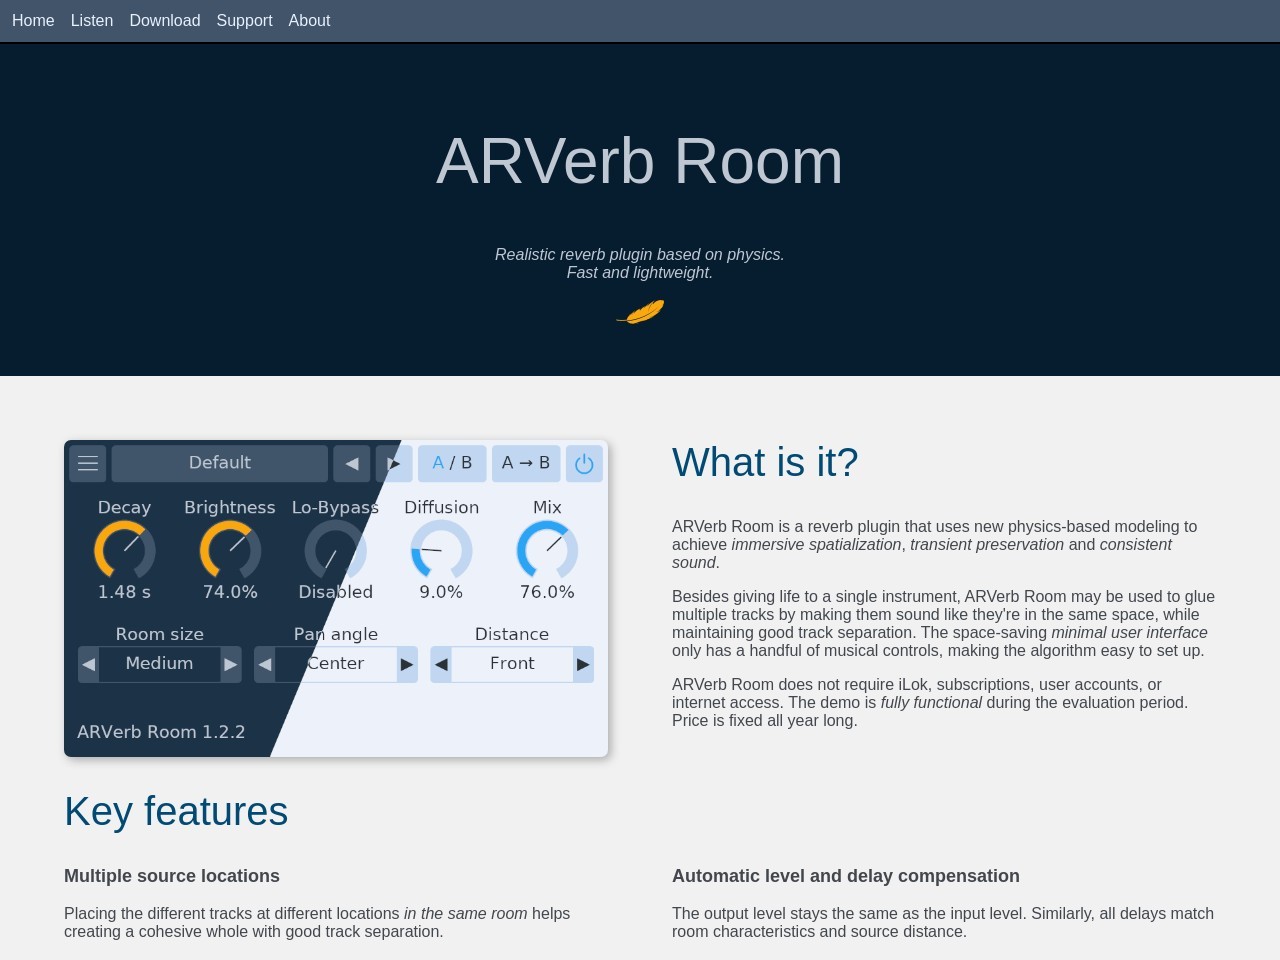 ARVerb Room reverb plugin